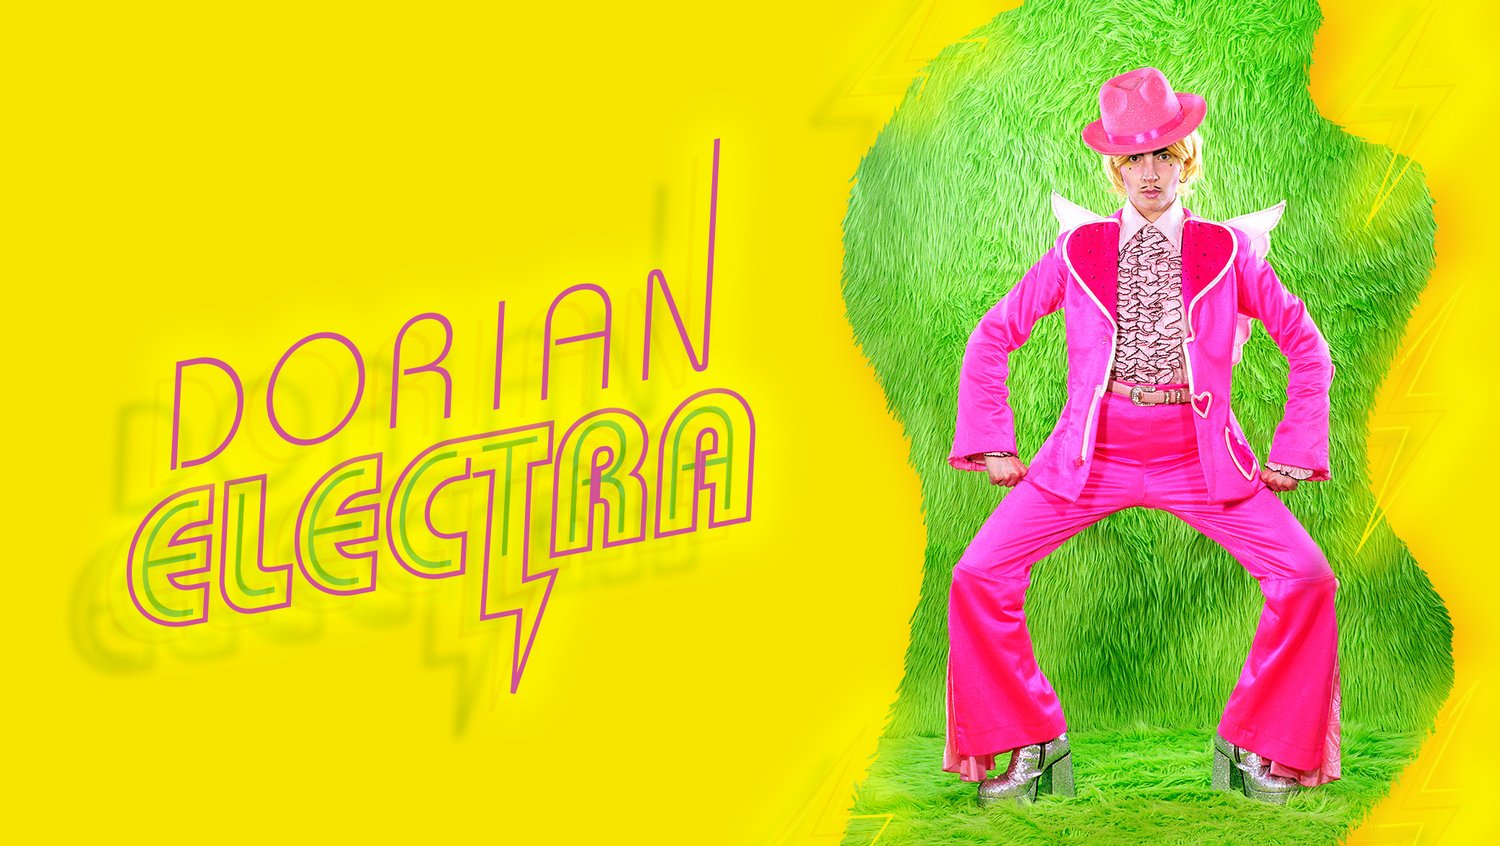 Artist Feature: Dorian Electra